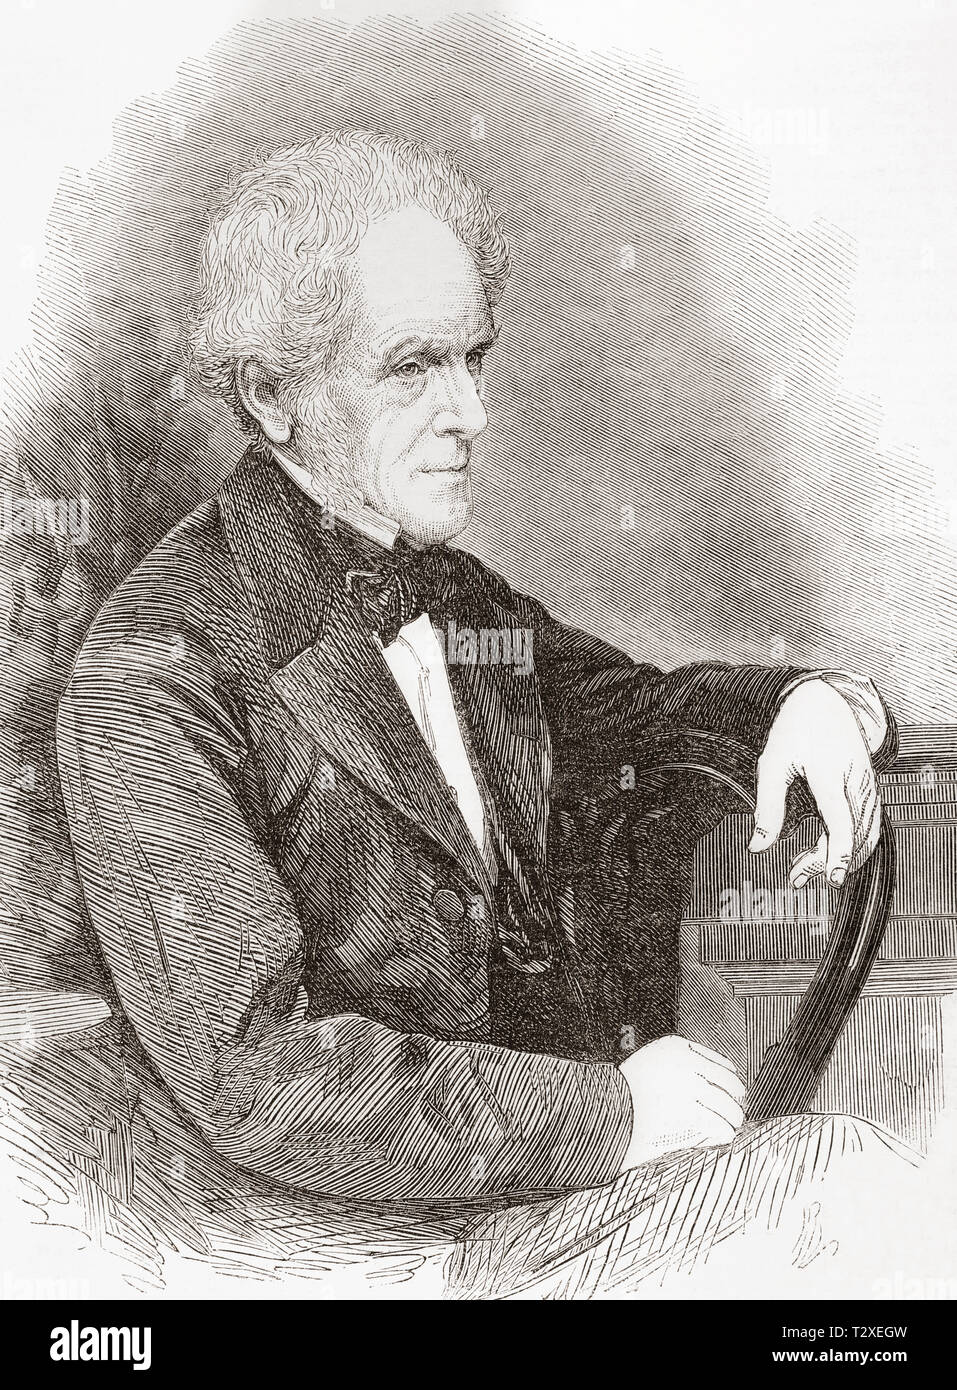 Isaac Taylor, 1787 - 1865. Anglais philosophique et historique, l'écrivain, artiste et inventeur. À partir de l'Illustrated London News, publié en 1865. Banque D'Images